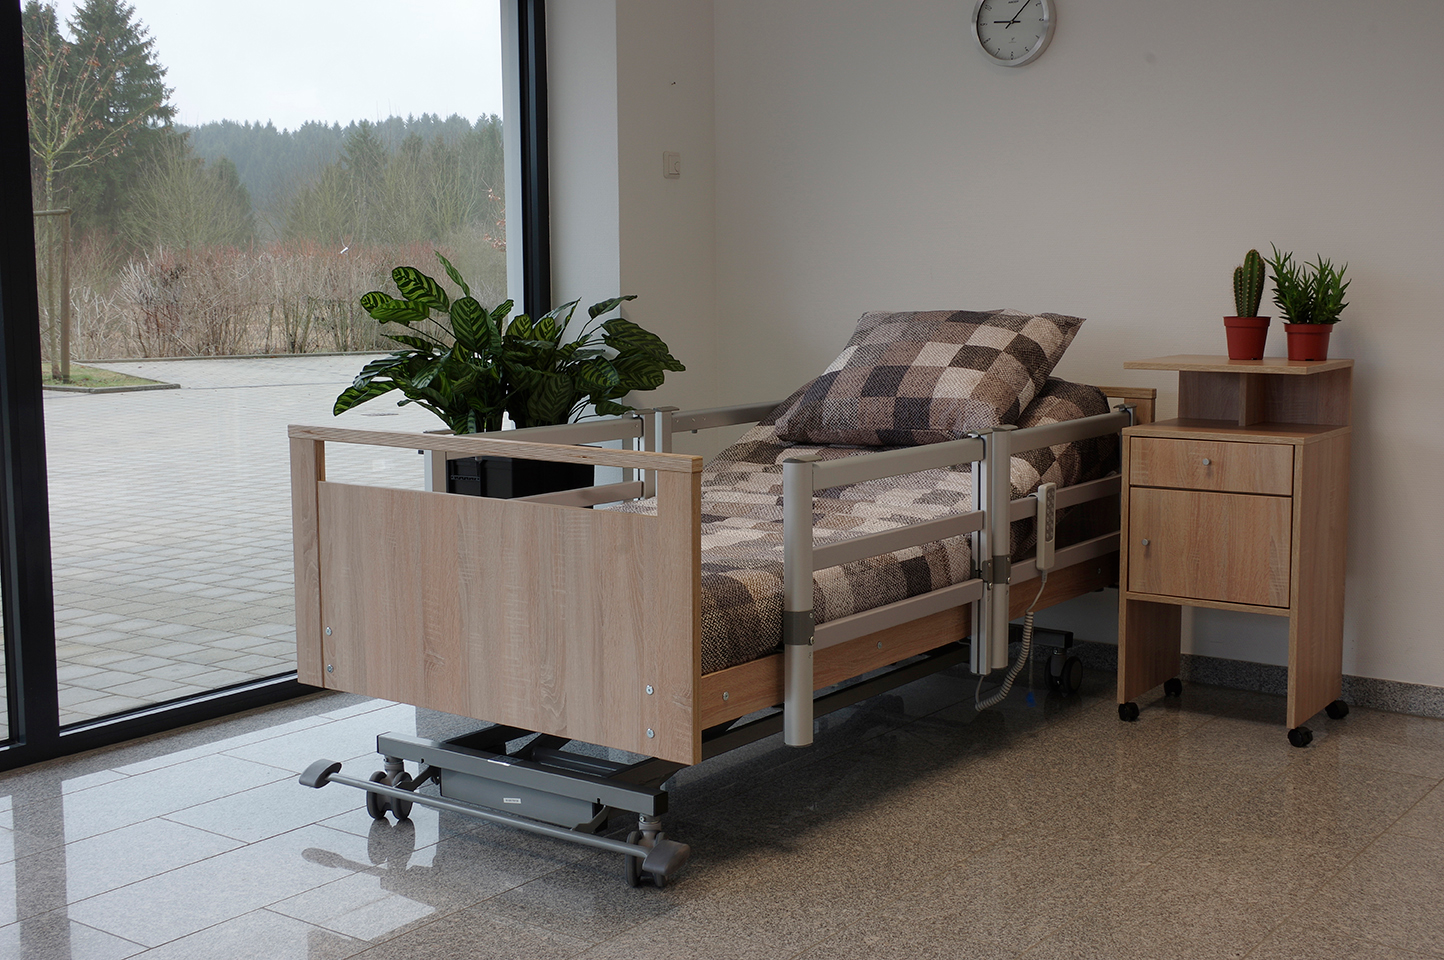 Krankenbetten aus Holz